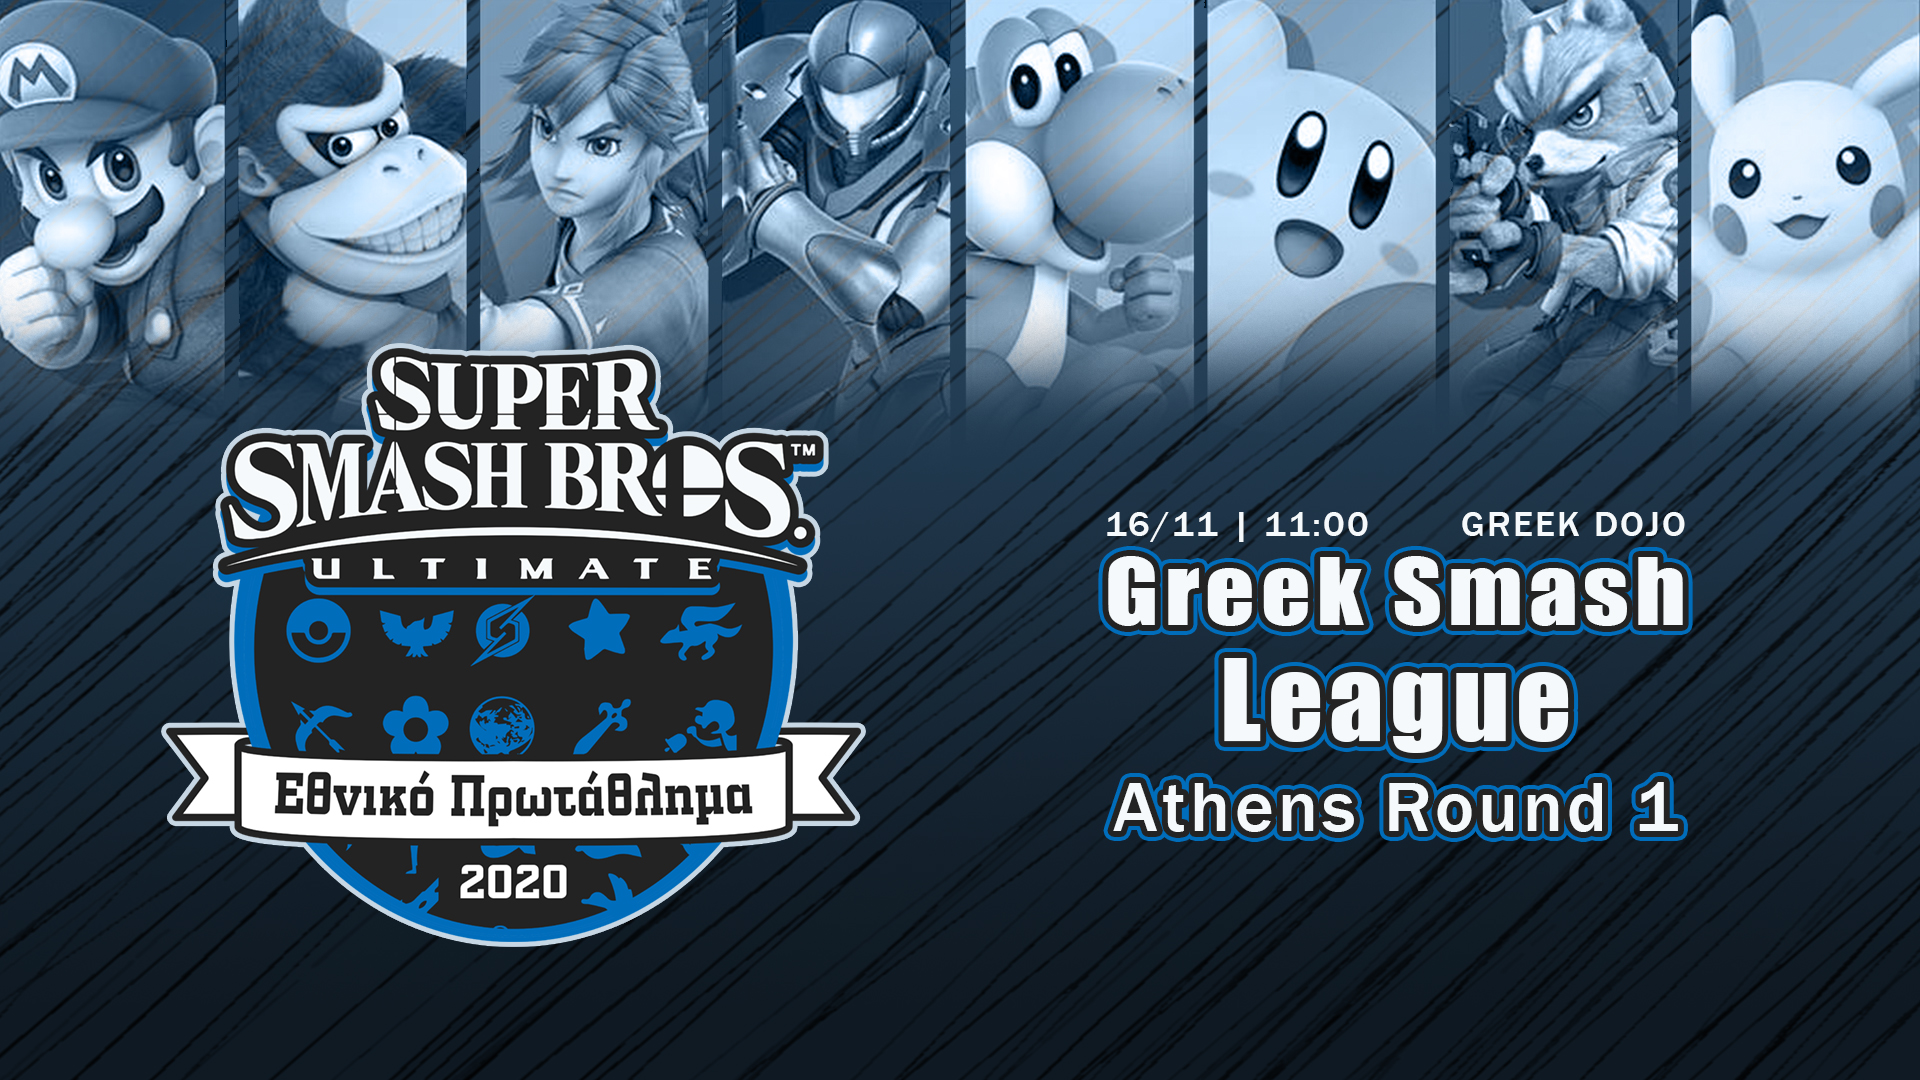 Greek Smash League 2020 Round 1 Athens